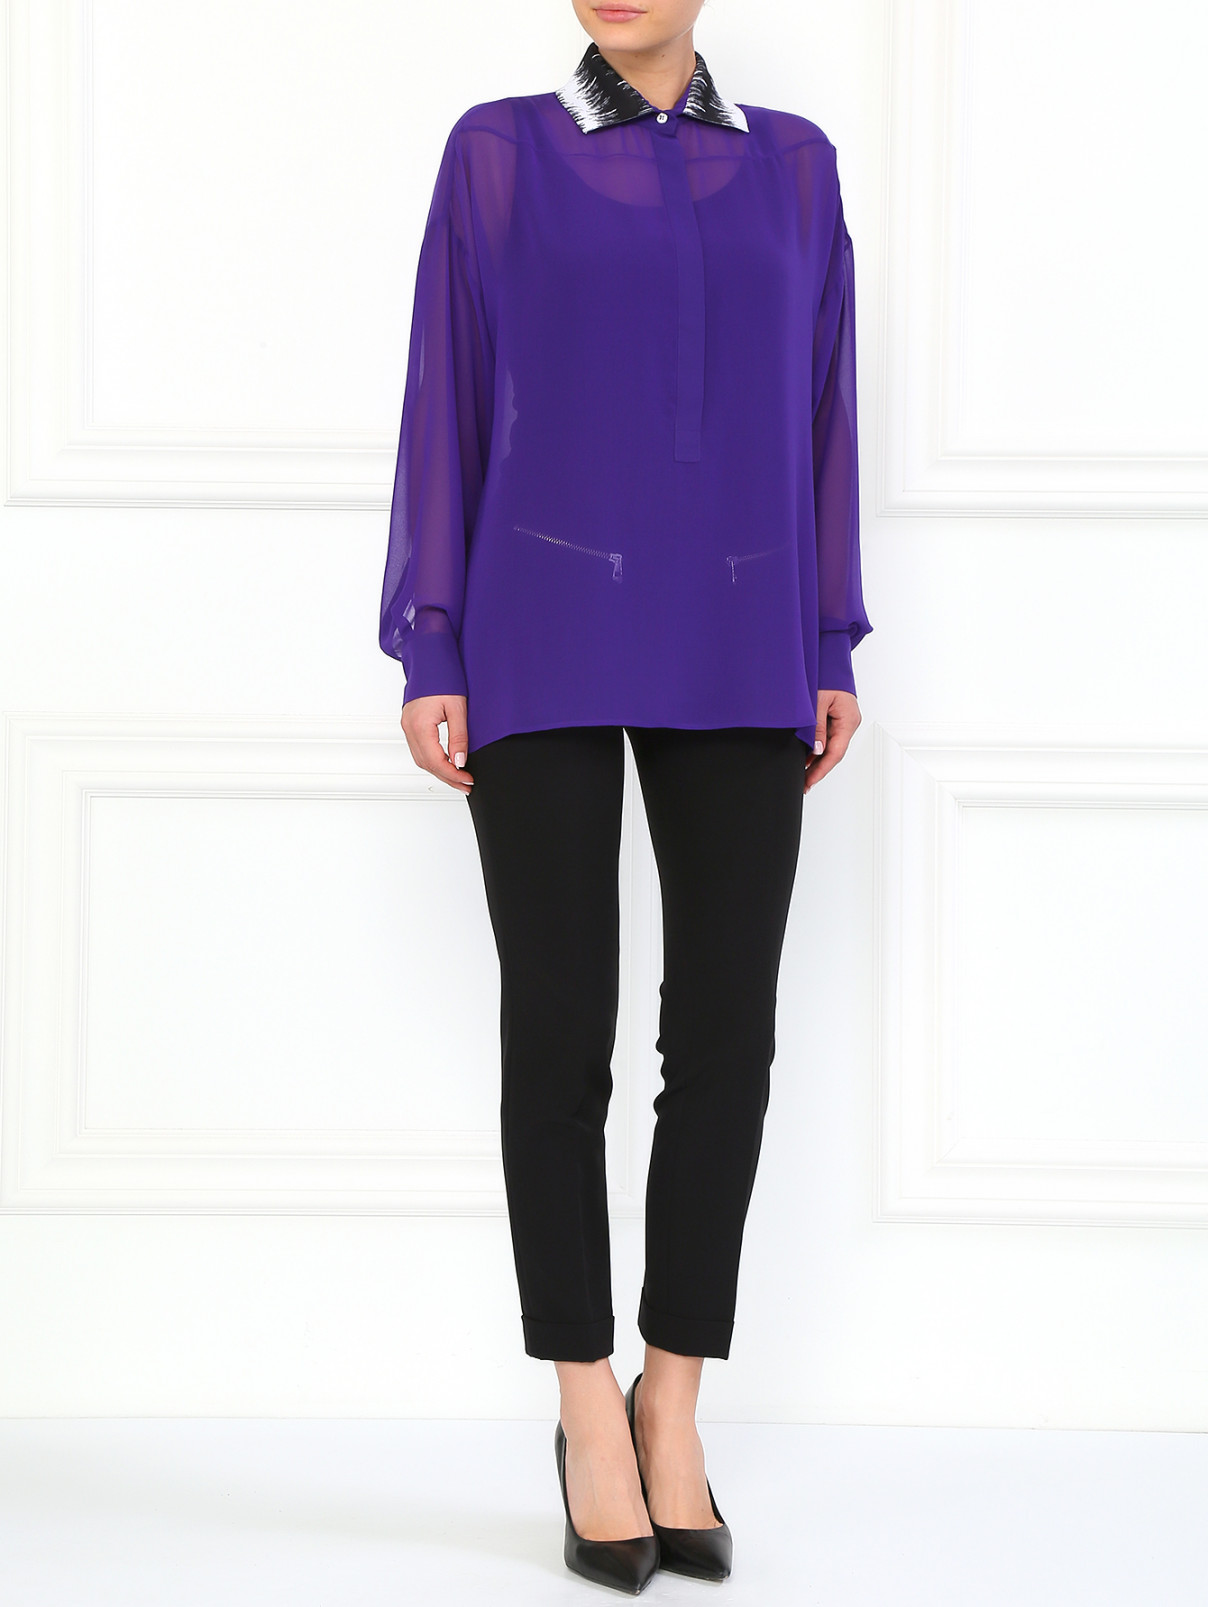 Легкая блуза с контрастным воротником Versace Collection  –  Модель Общий вид  – Цвет:  Фиолетовый